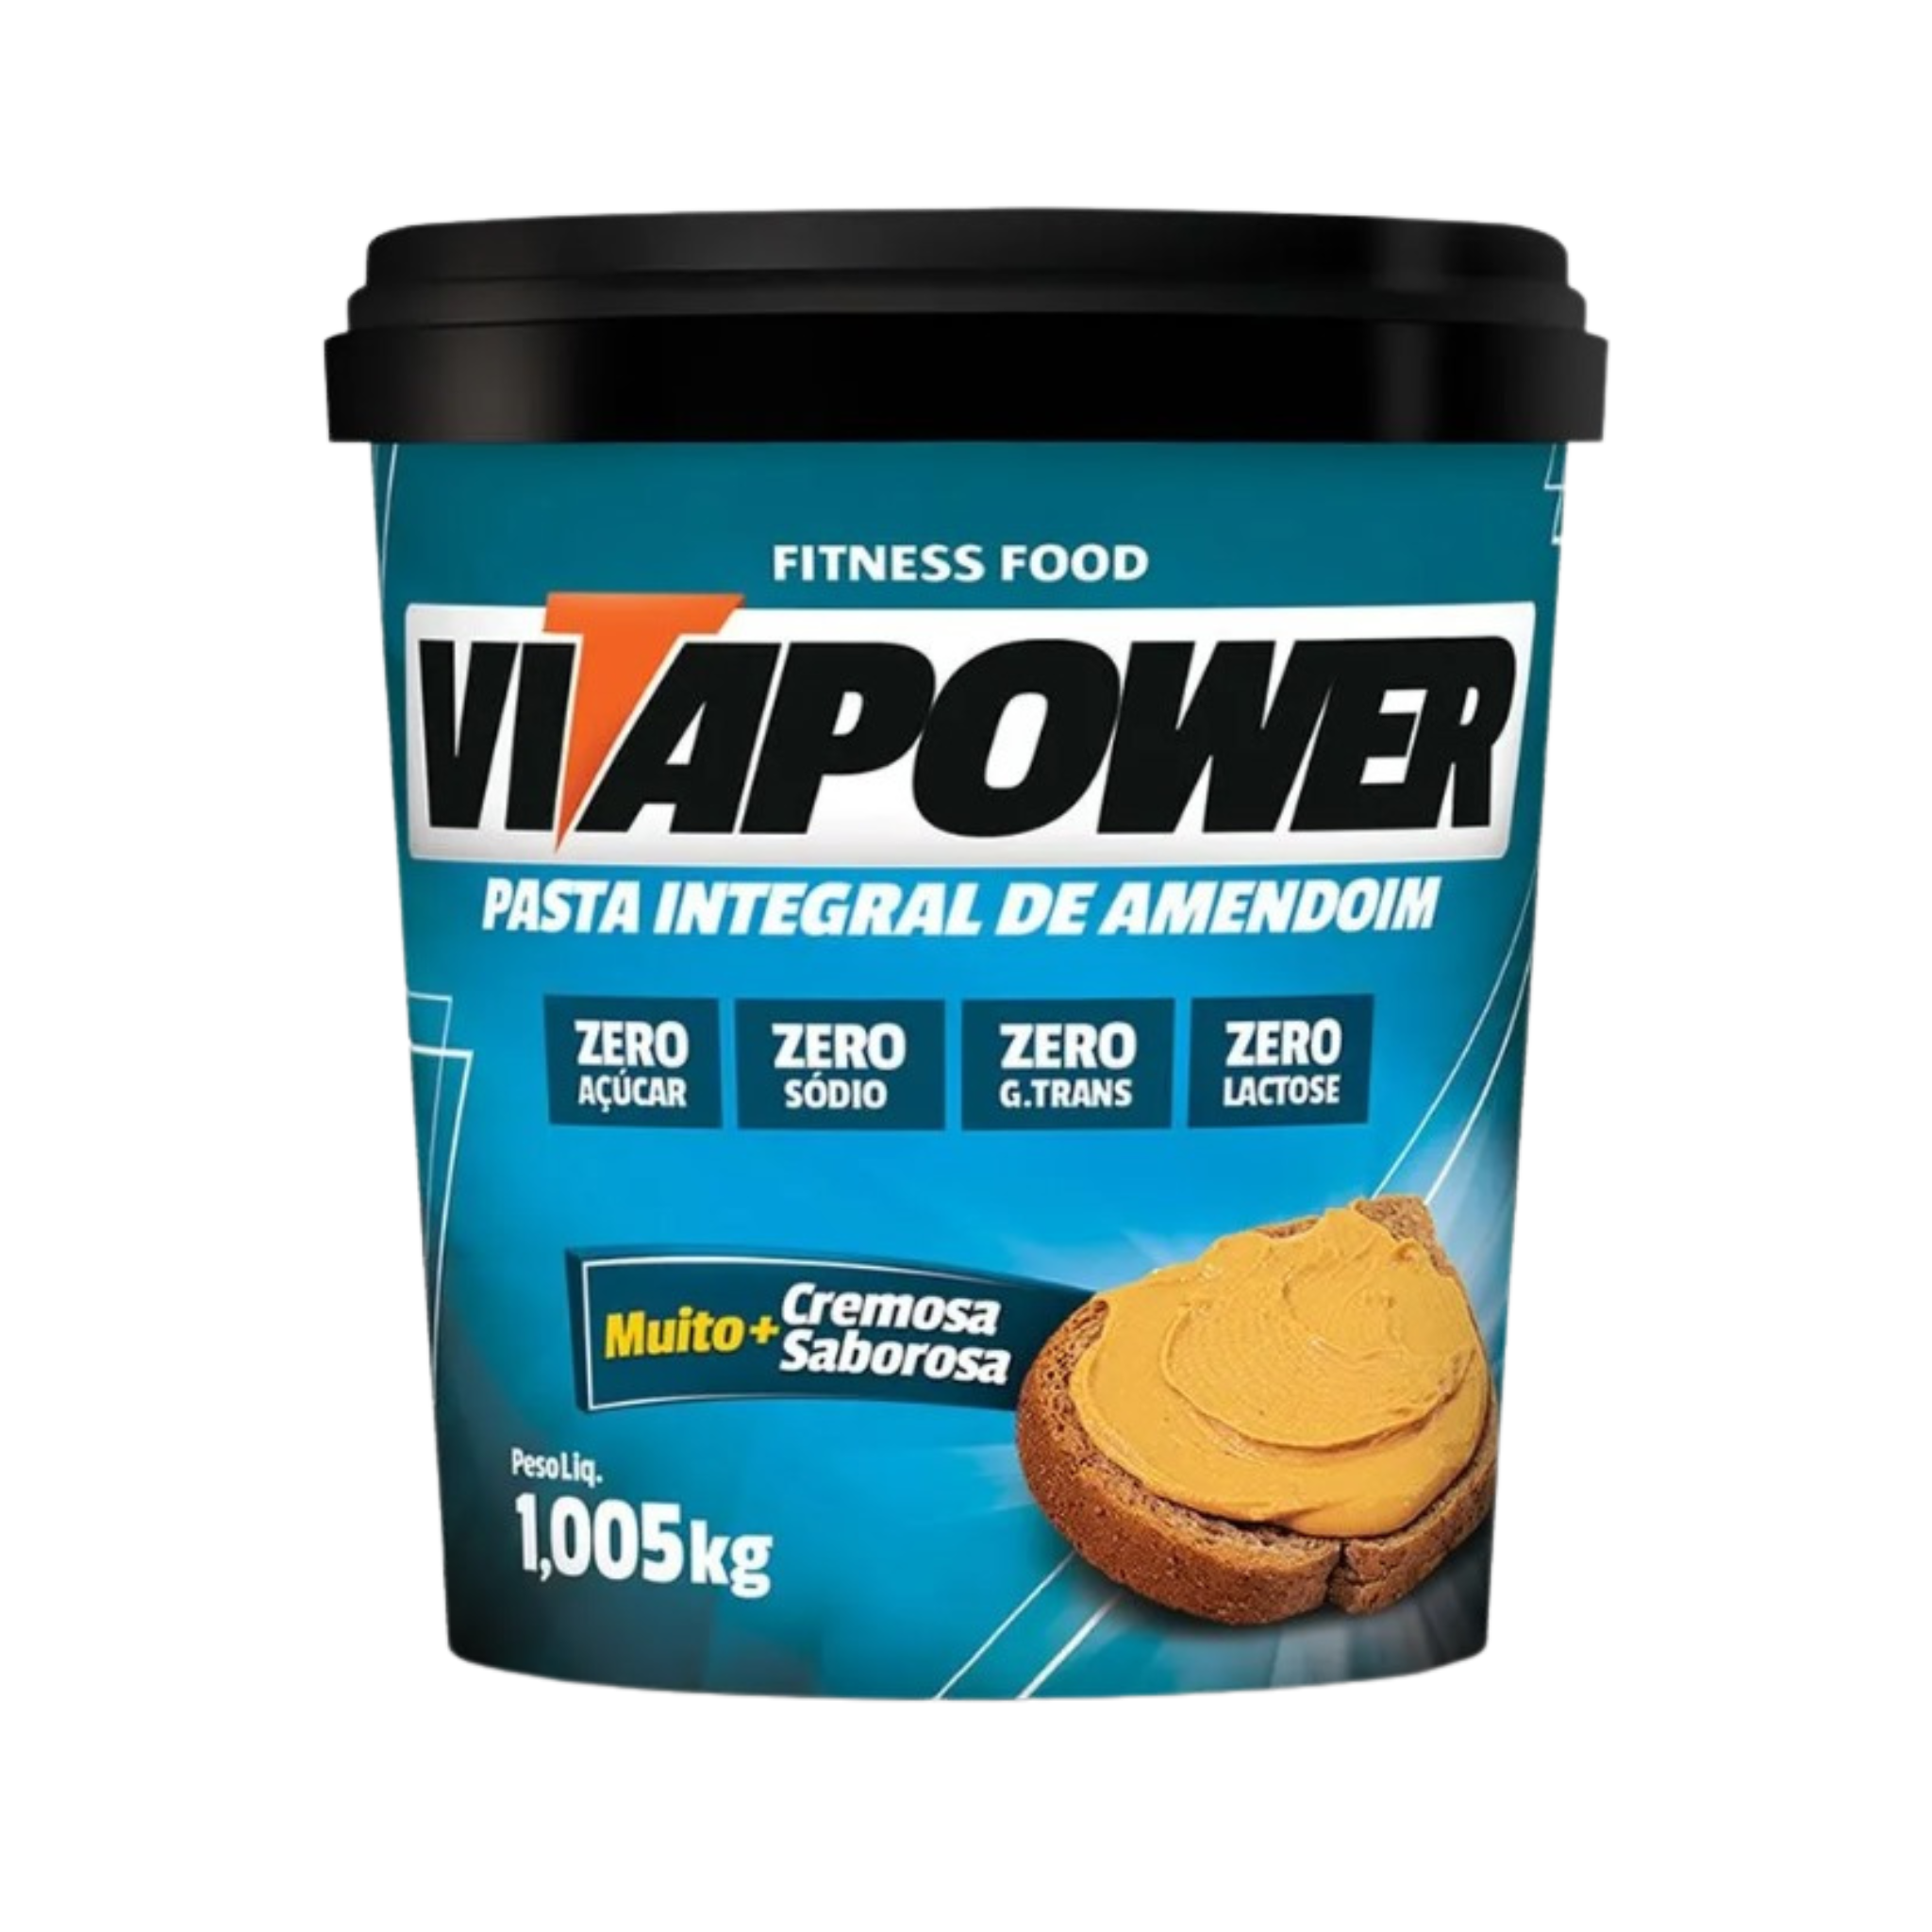 Pasta de amendoim integral press cream 1,05kg vitapower